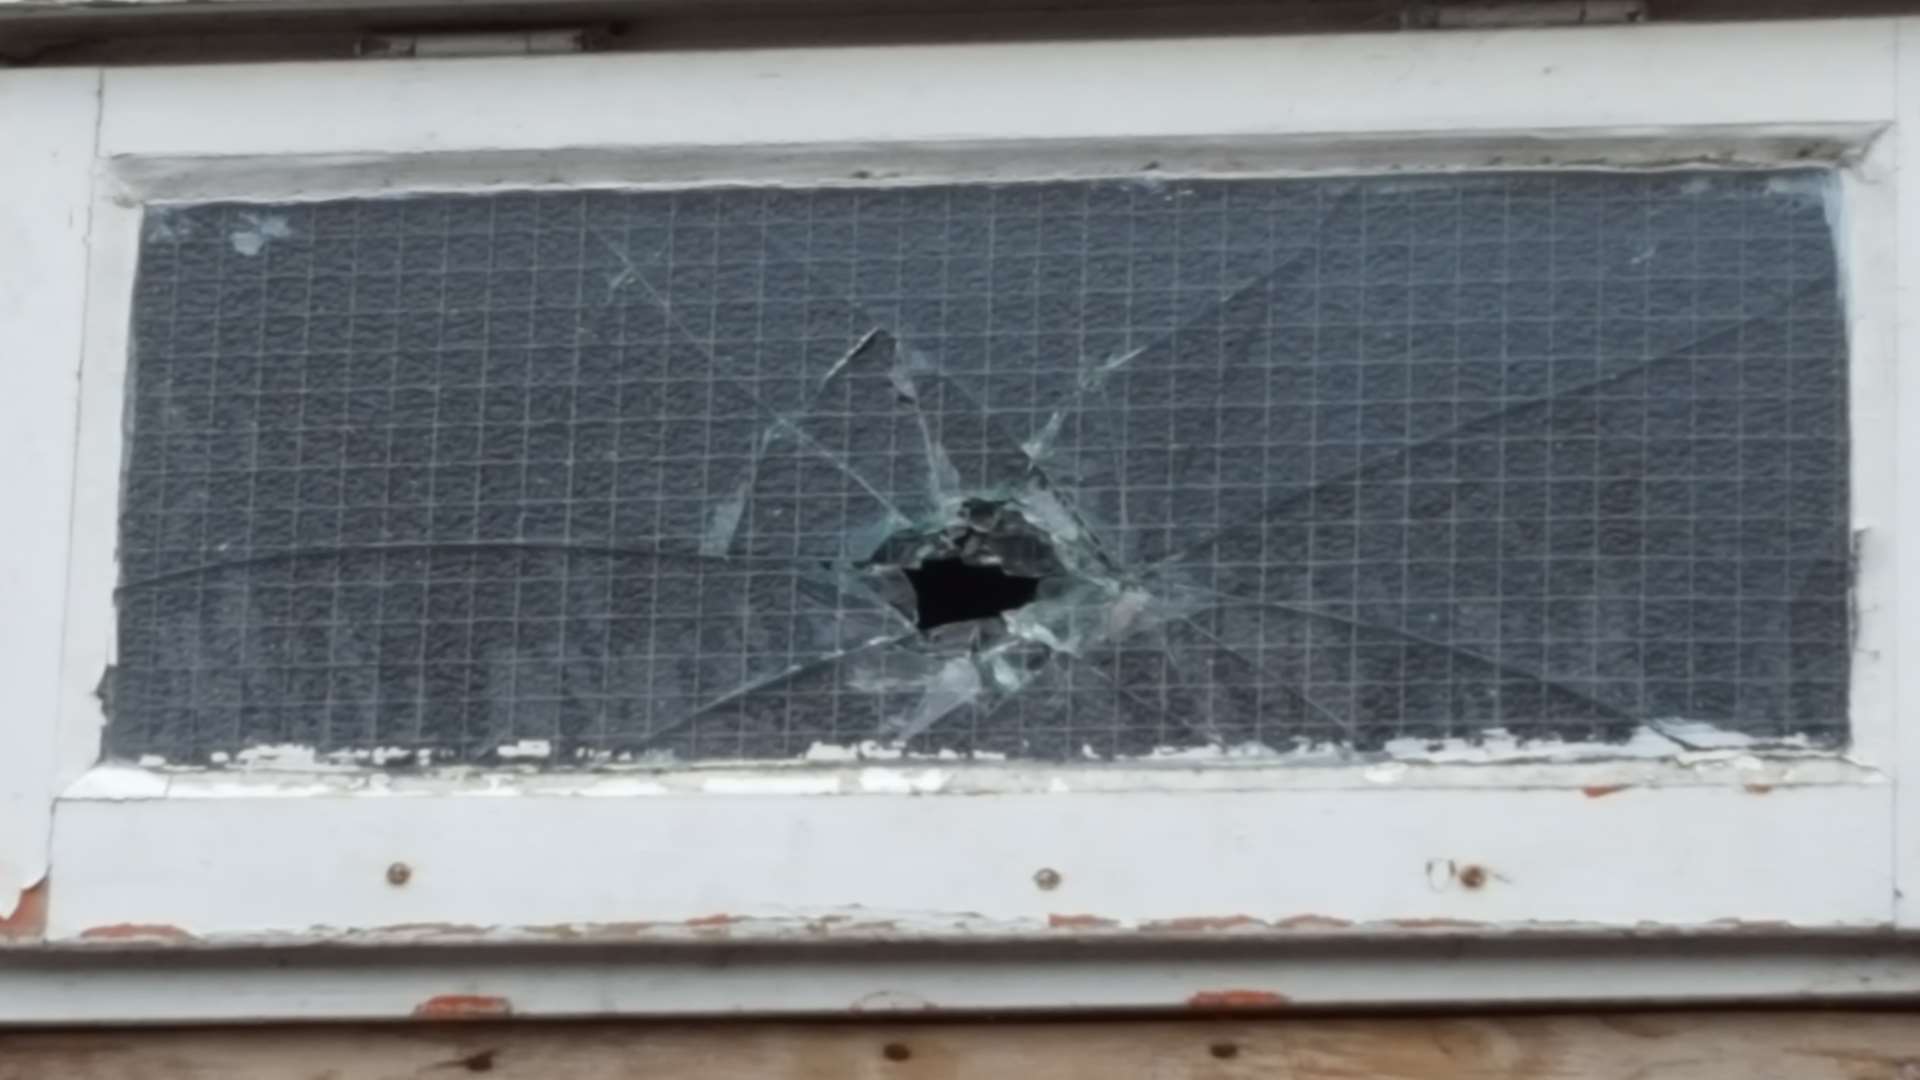 Several windows were damaged